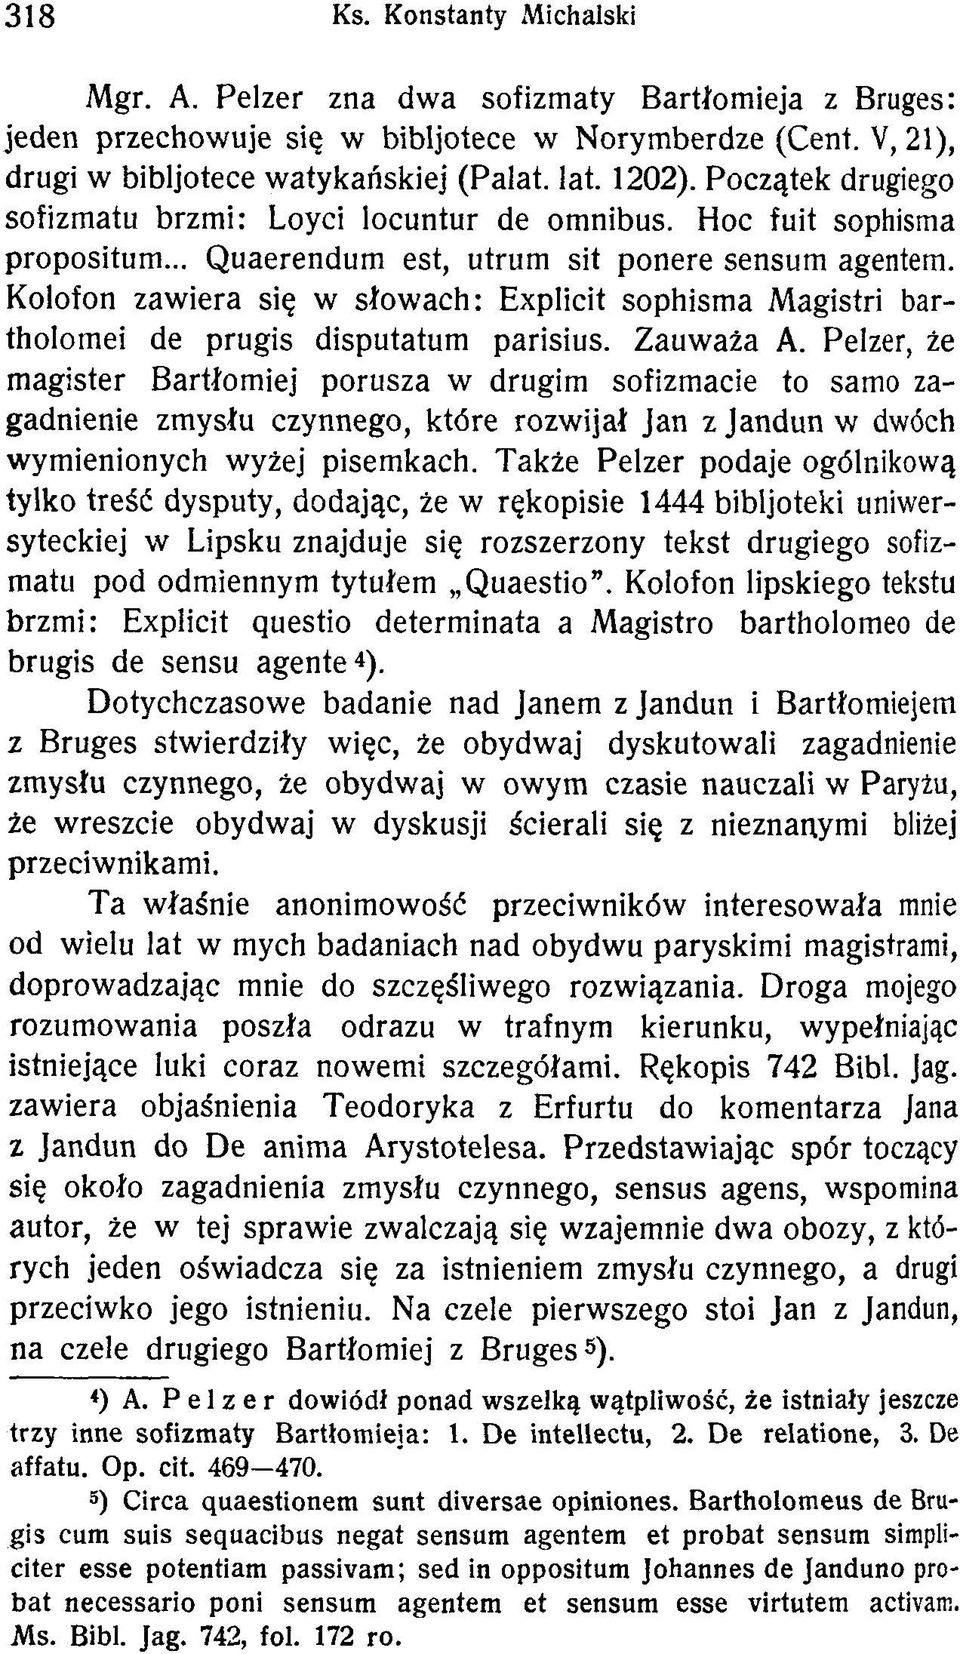 Kolofon zawiera się w słowach: Explicit sophisma Magistri bartholomei de prugis disputatum parisius. Zauważa A.